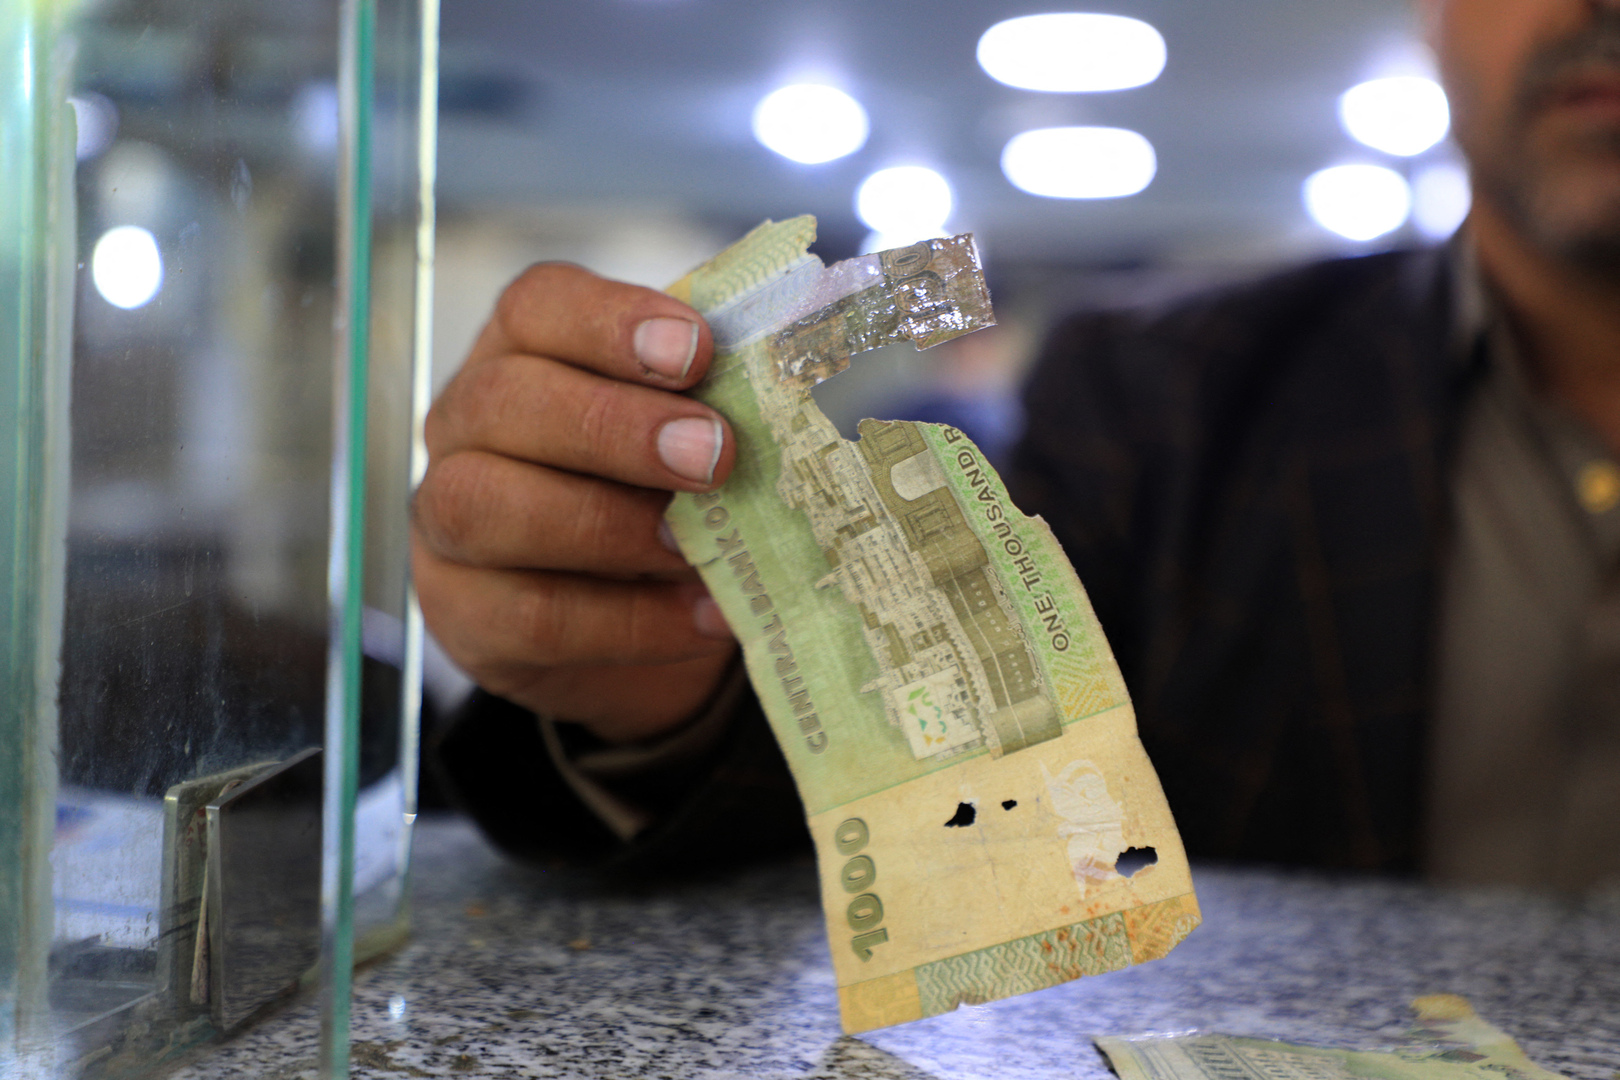 رجل يحمل ورقة نقدية ممزقة من الريال اليمني في مكتب صرف العملات في العاصمة اليمنية صنعاء